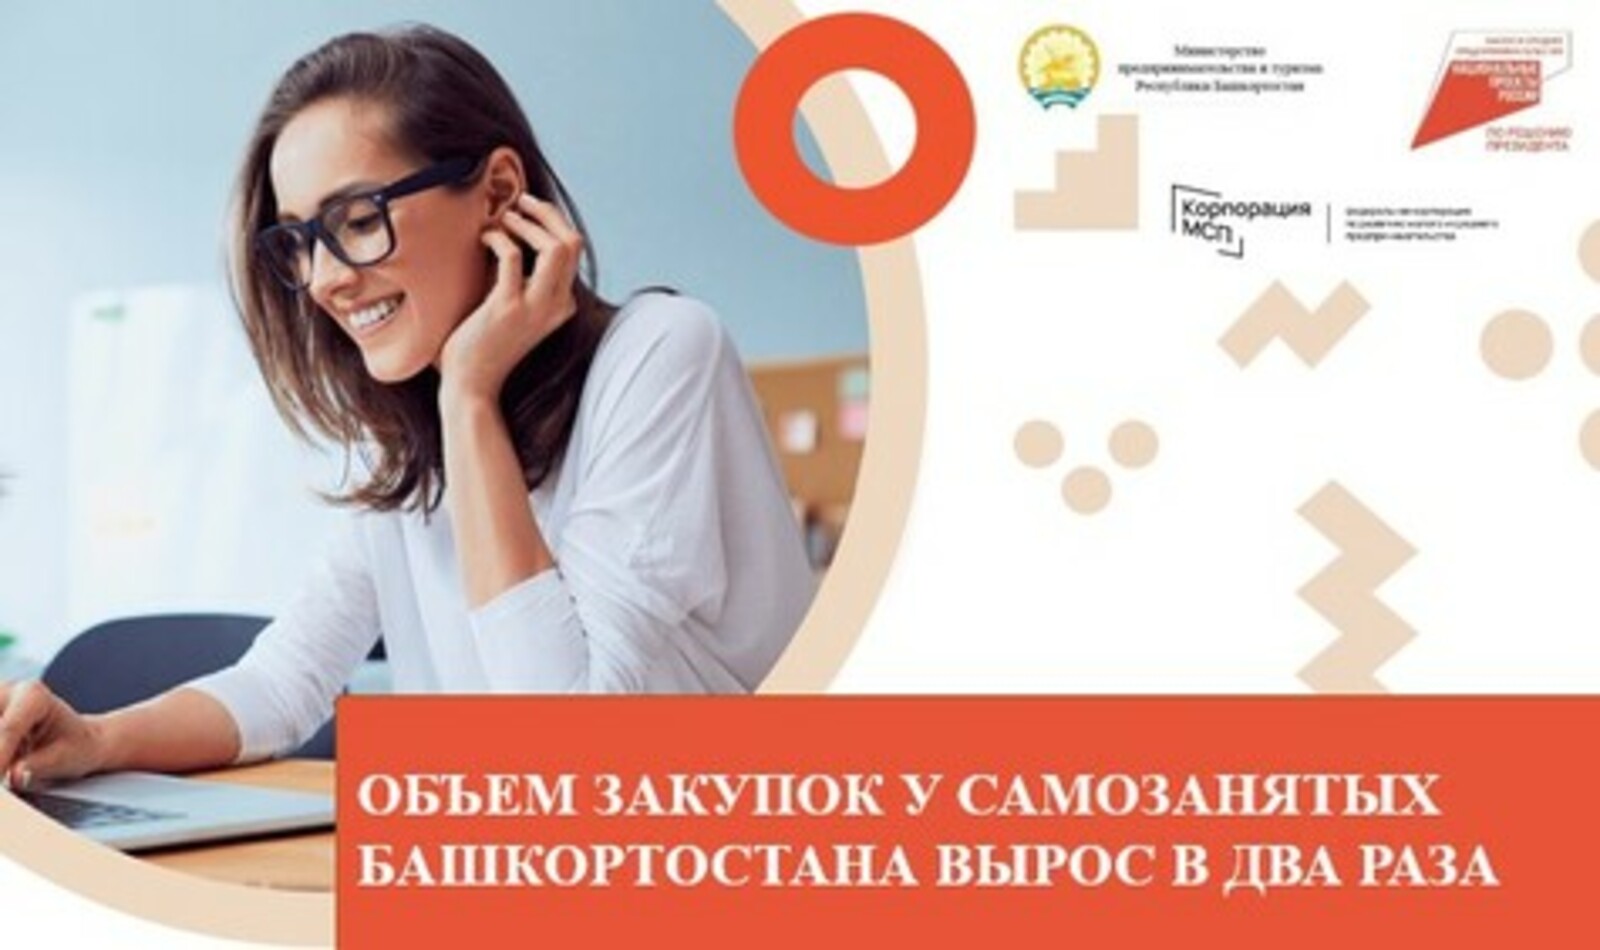 Два проекта из Башкортостана вошли в федеральный реестр лучших практик по благоустройству